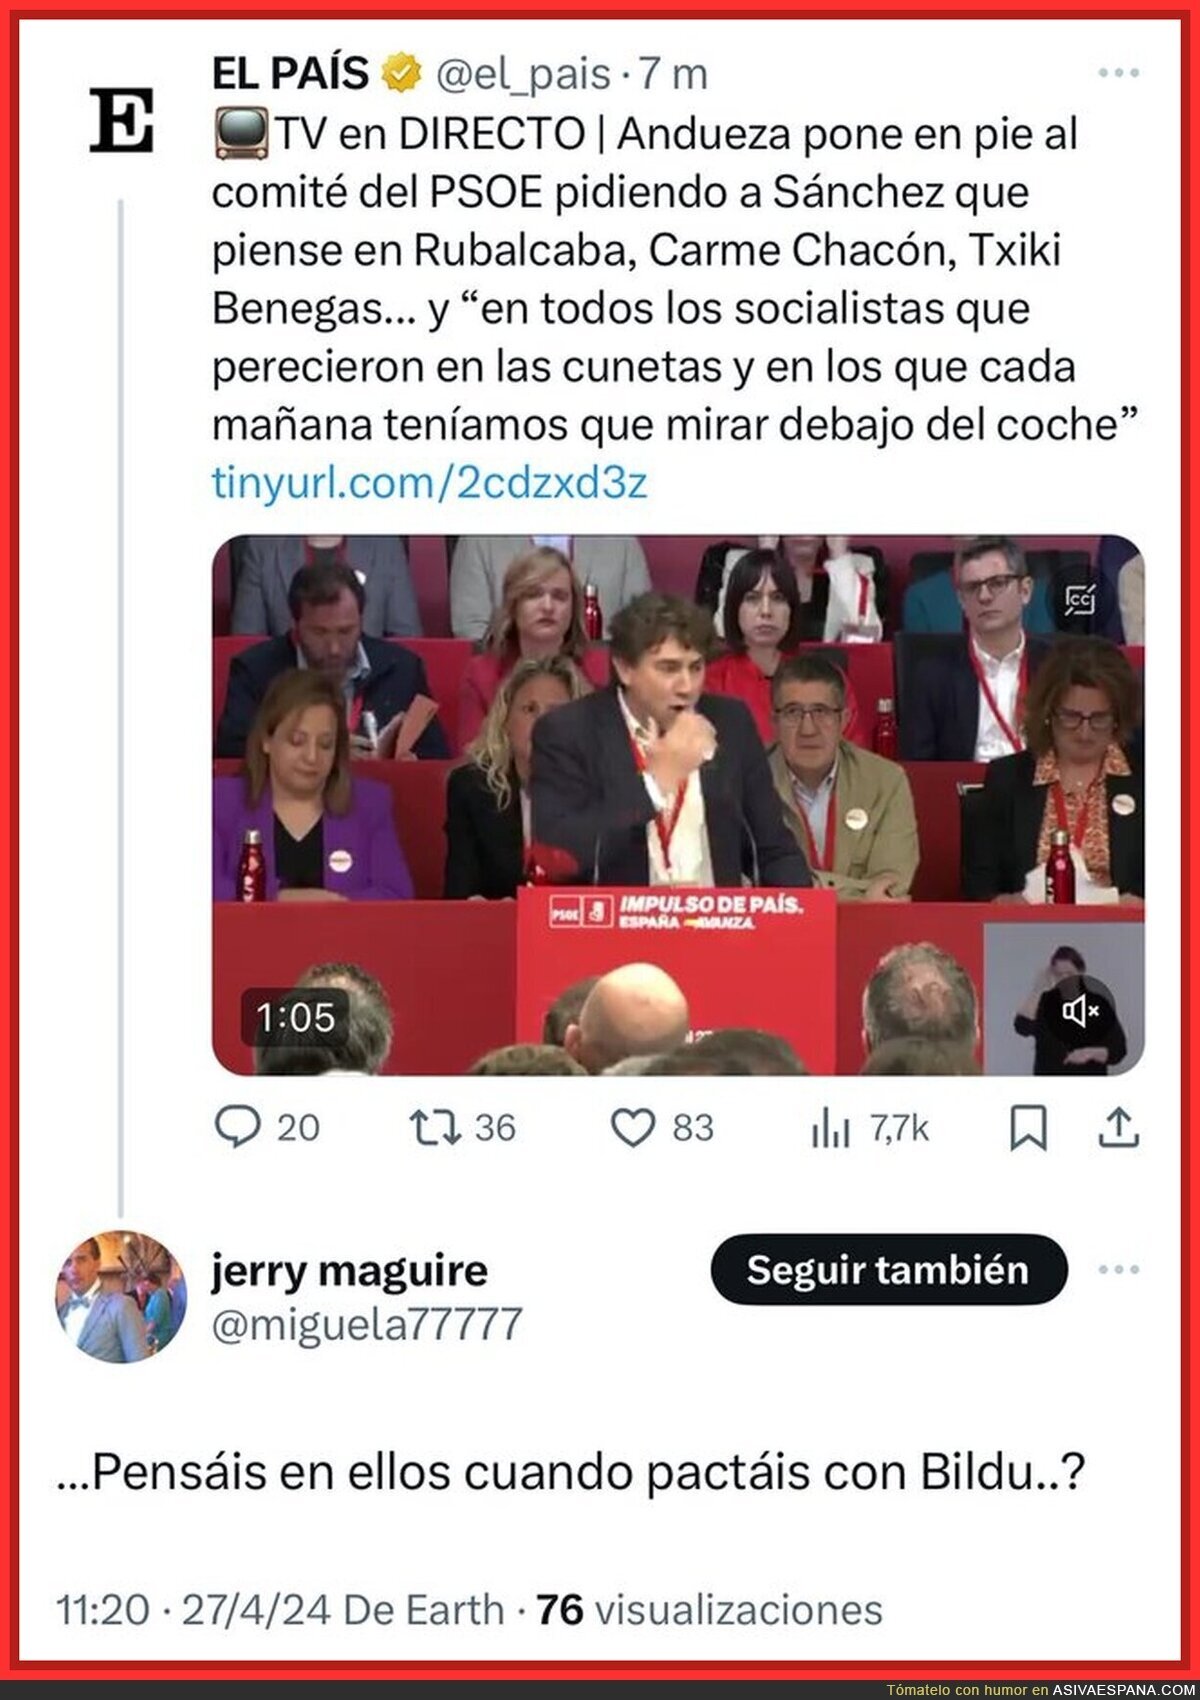 El pensamiento de la gente del PSOE